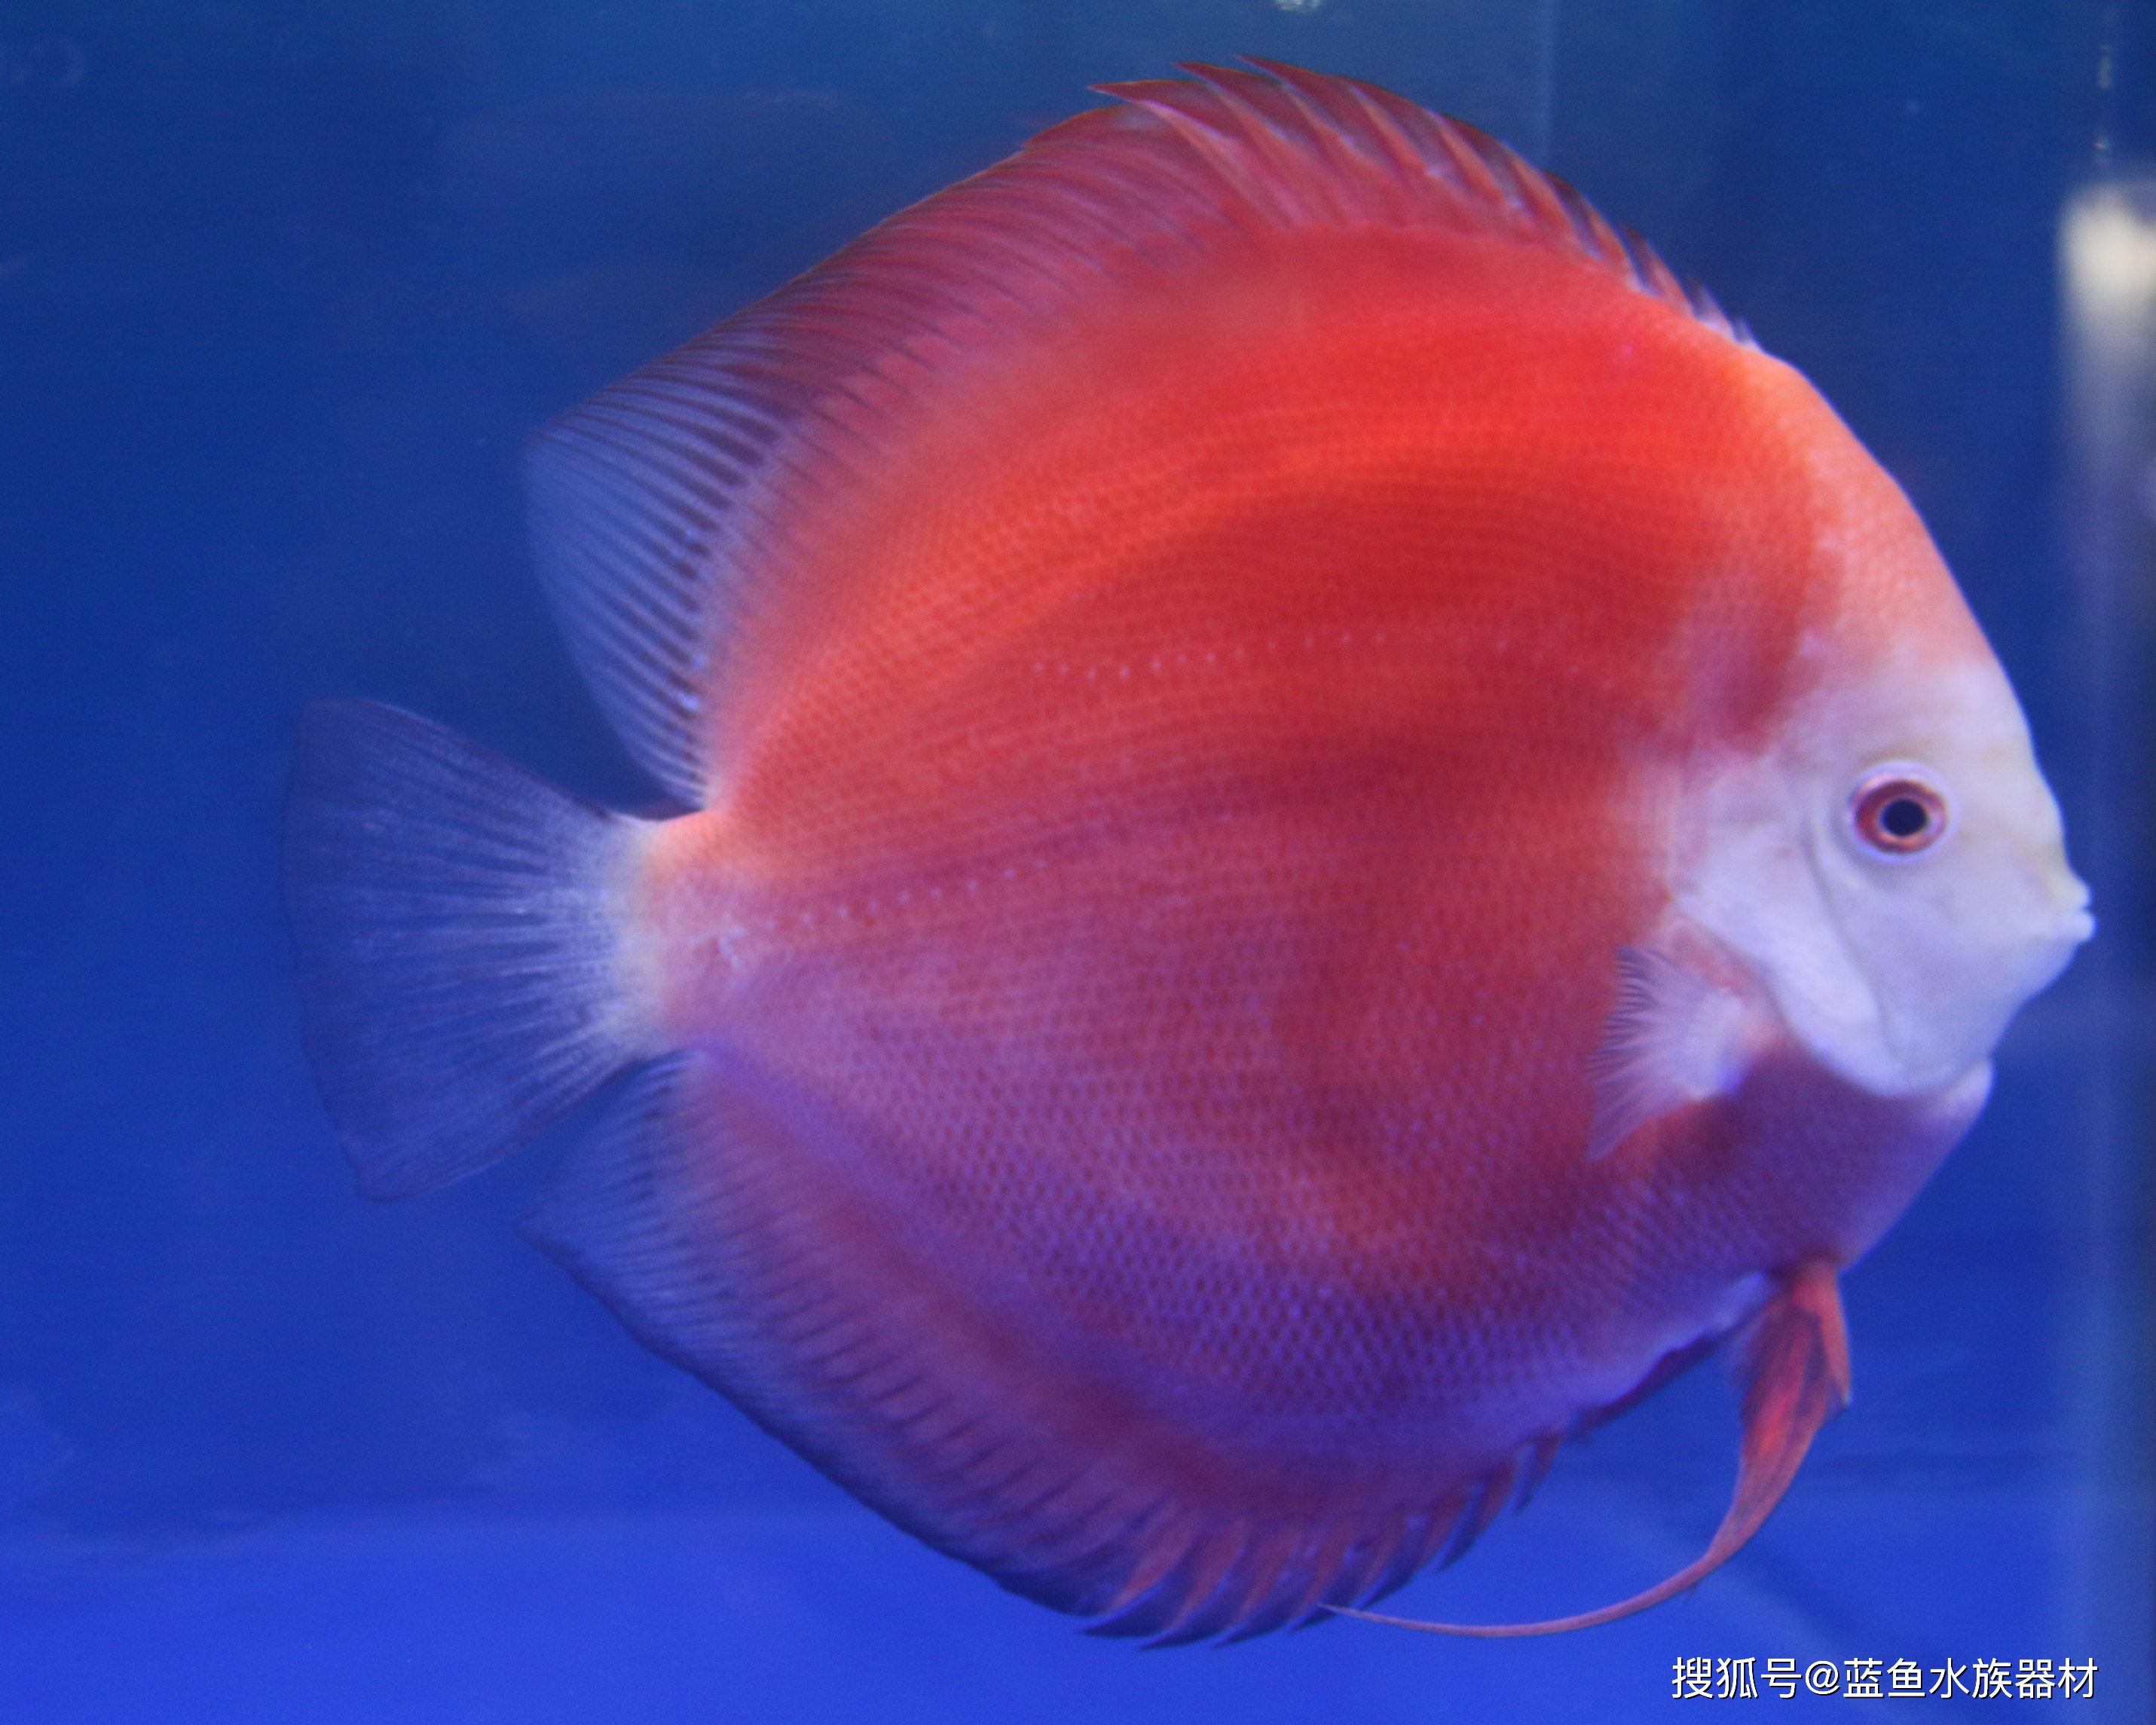 七彩神仙鱼虽然被叫做黄棕盘丽鱼或盘丽鱼